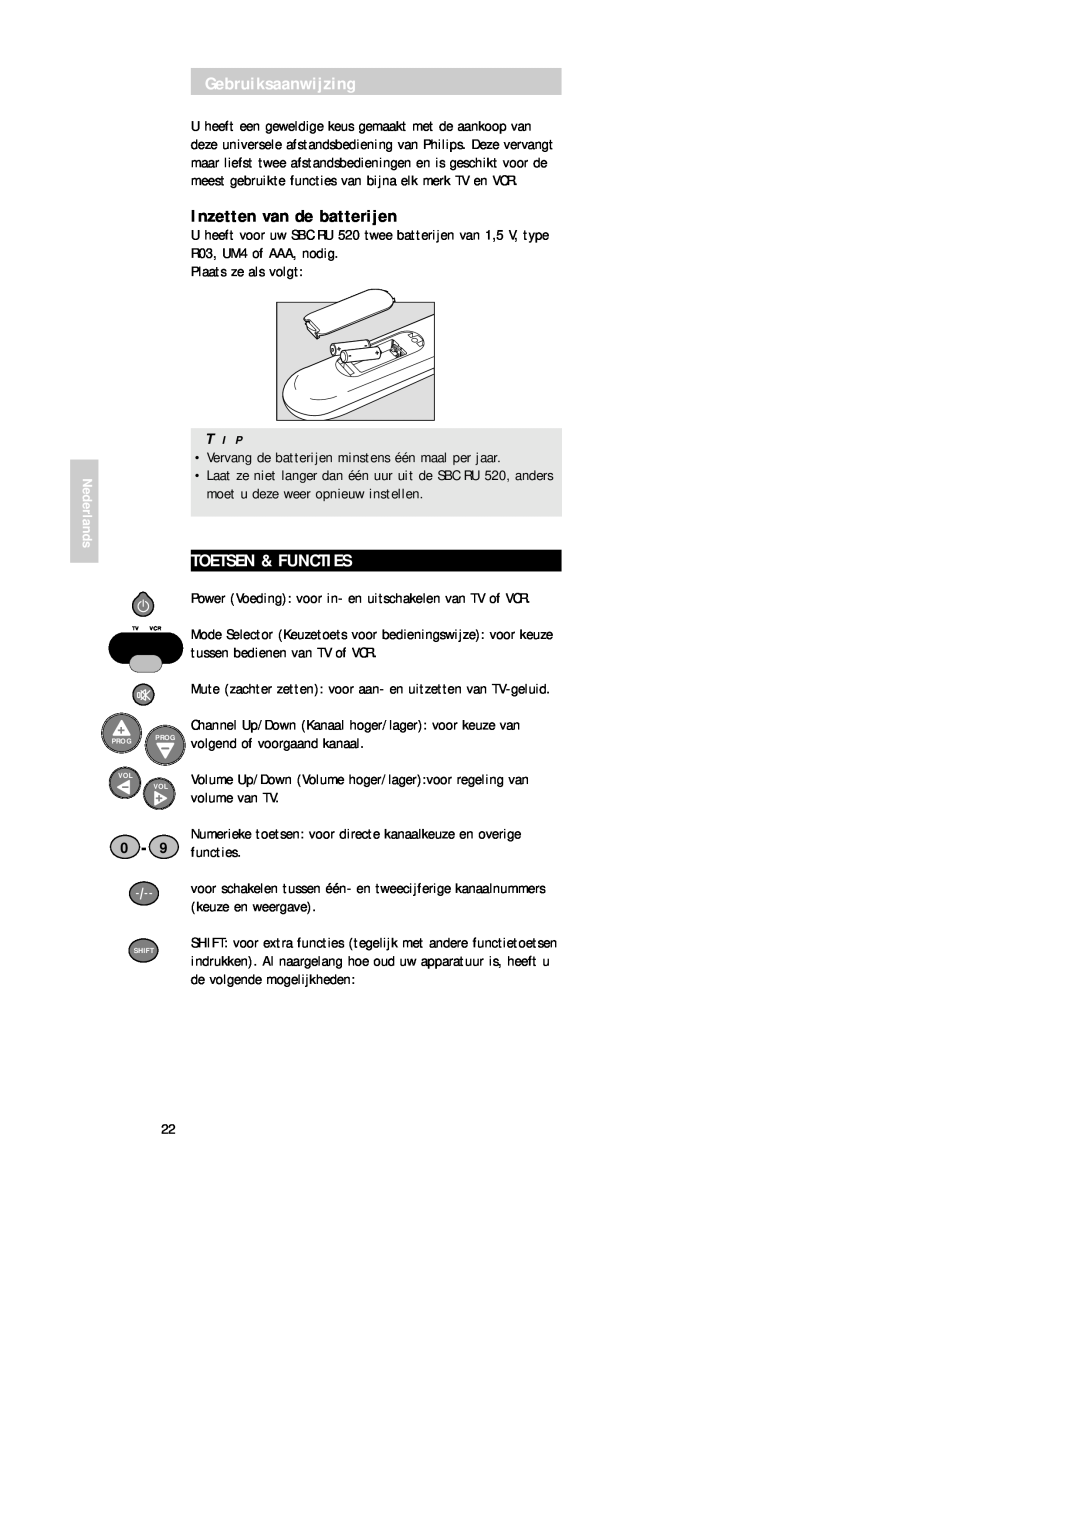 Philips SBC RU 520 manual Gebruiksaanwijzing, Inzetten van de batterijen, Toetsen & Functies 